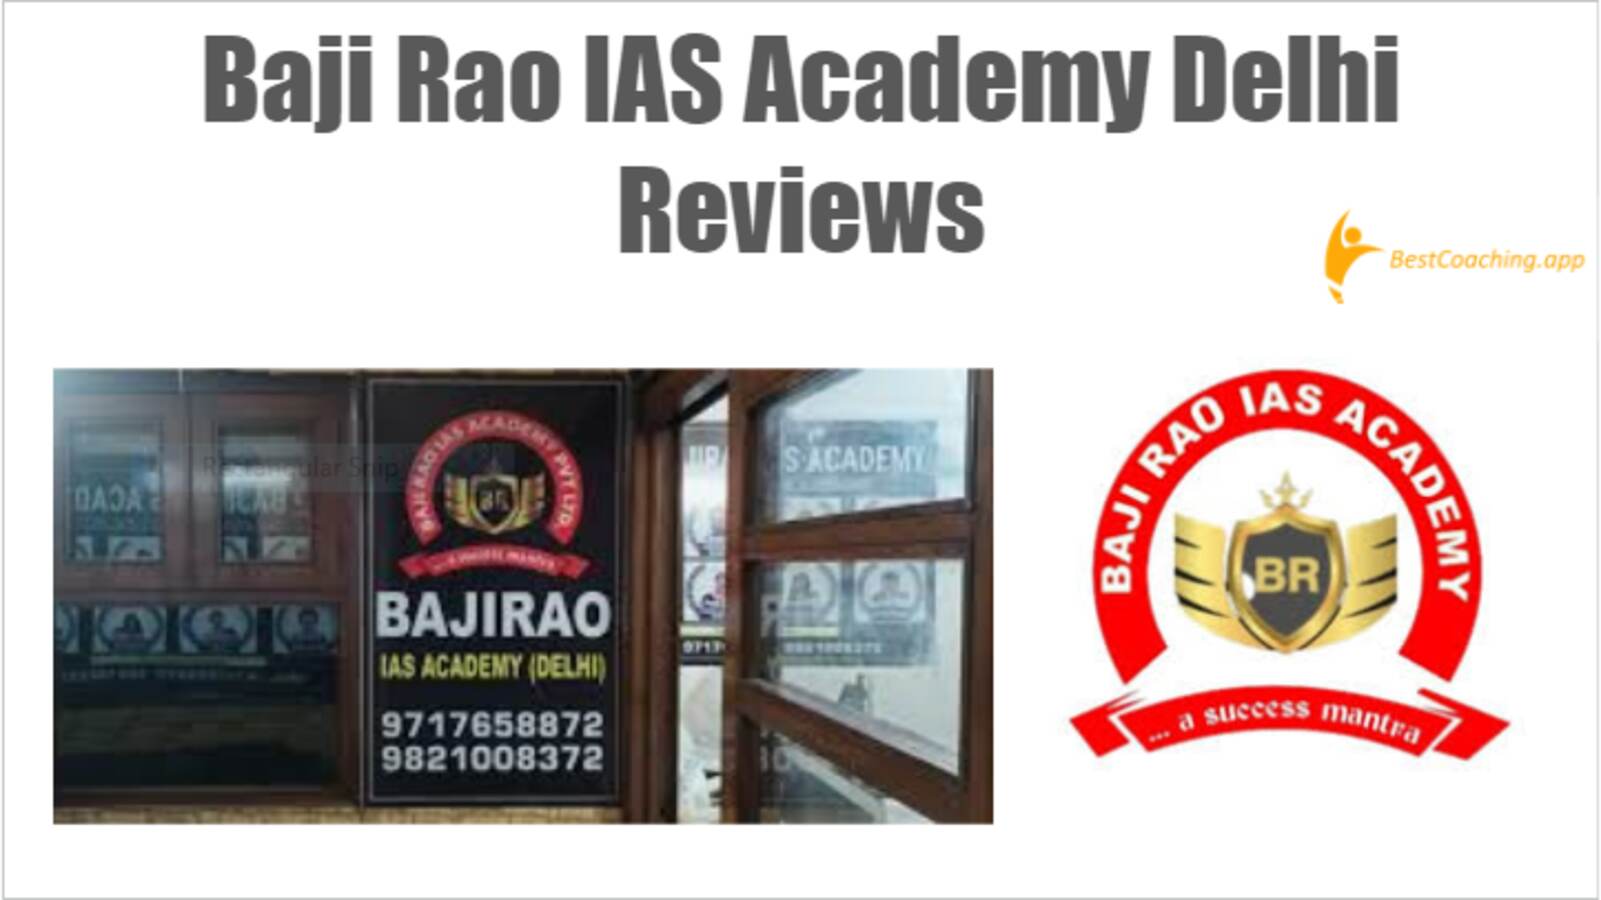 Baji Rao IAS Academy Delhi Reviews